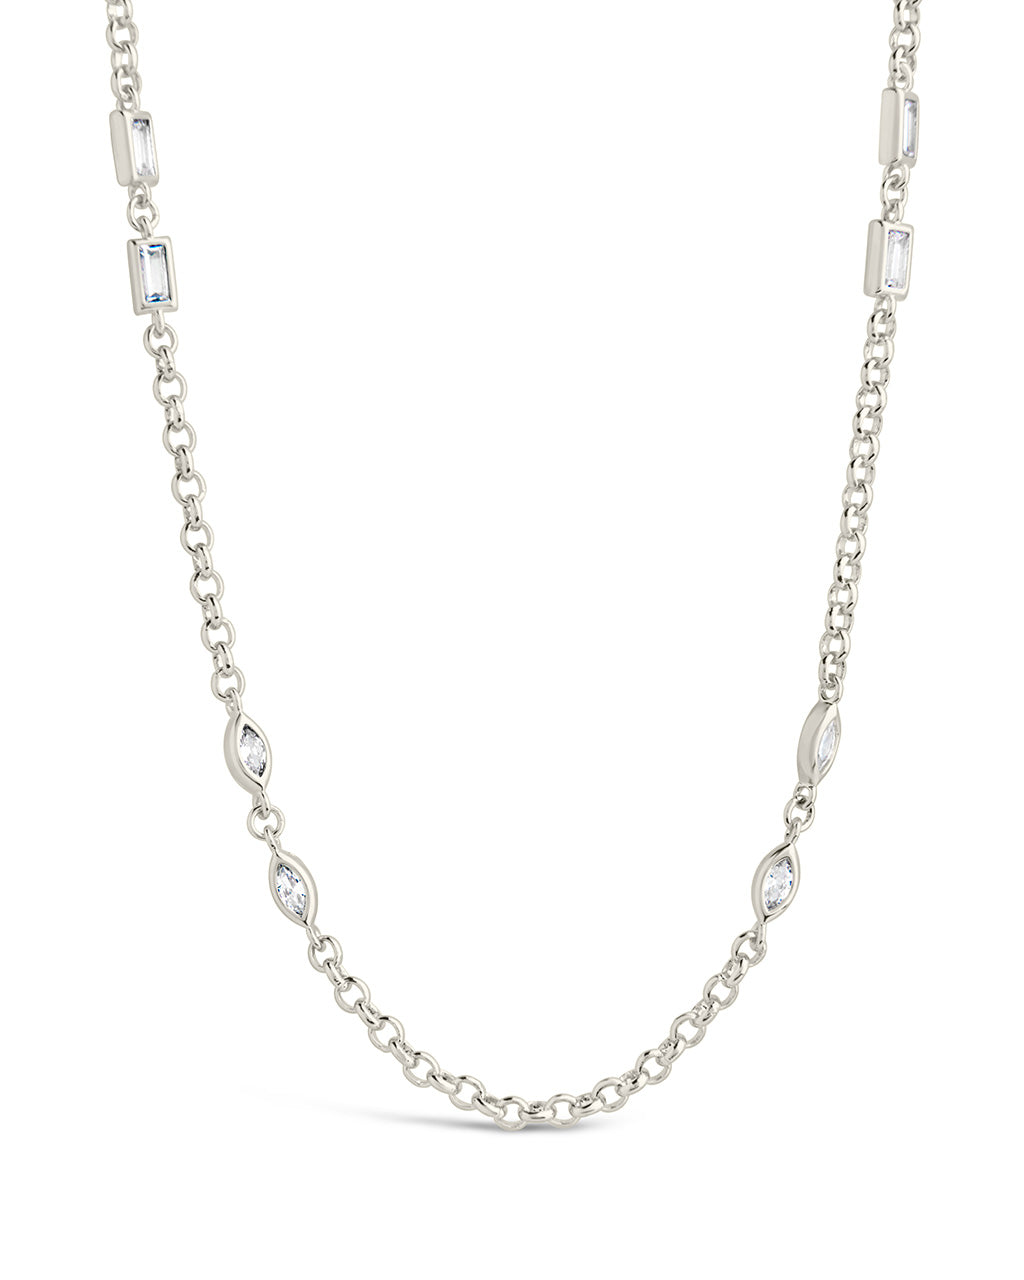 Marceline Necklace Necklace Sterling Forever Silver 